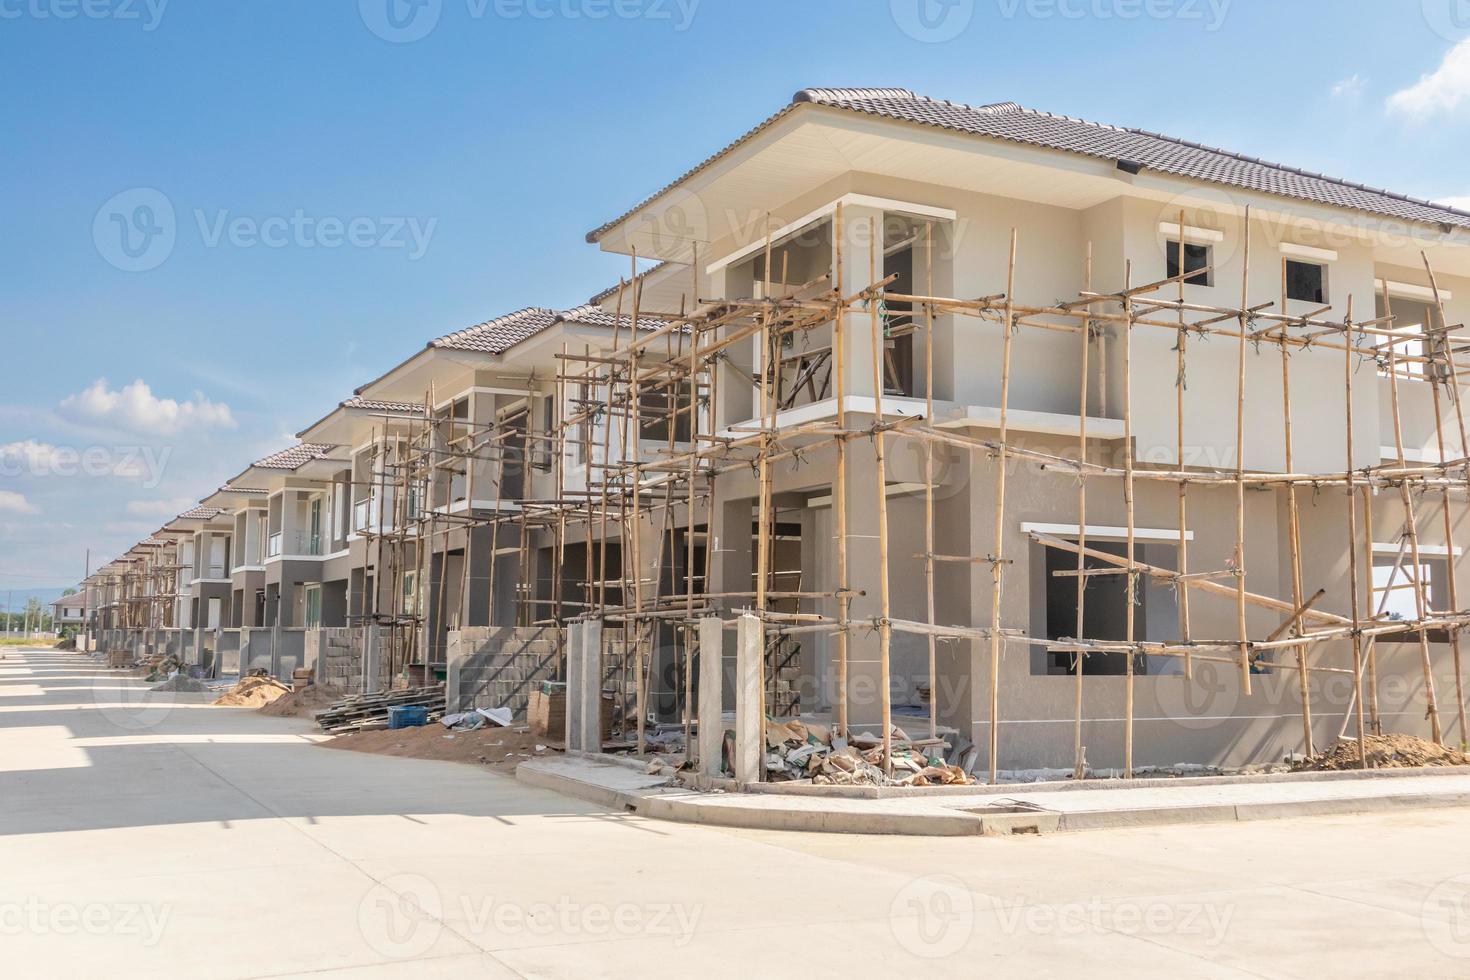 construção residencial nova casa em andamento no canteiro de obras desenvolvimento imobiliário foto